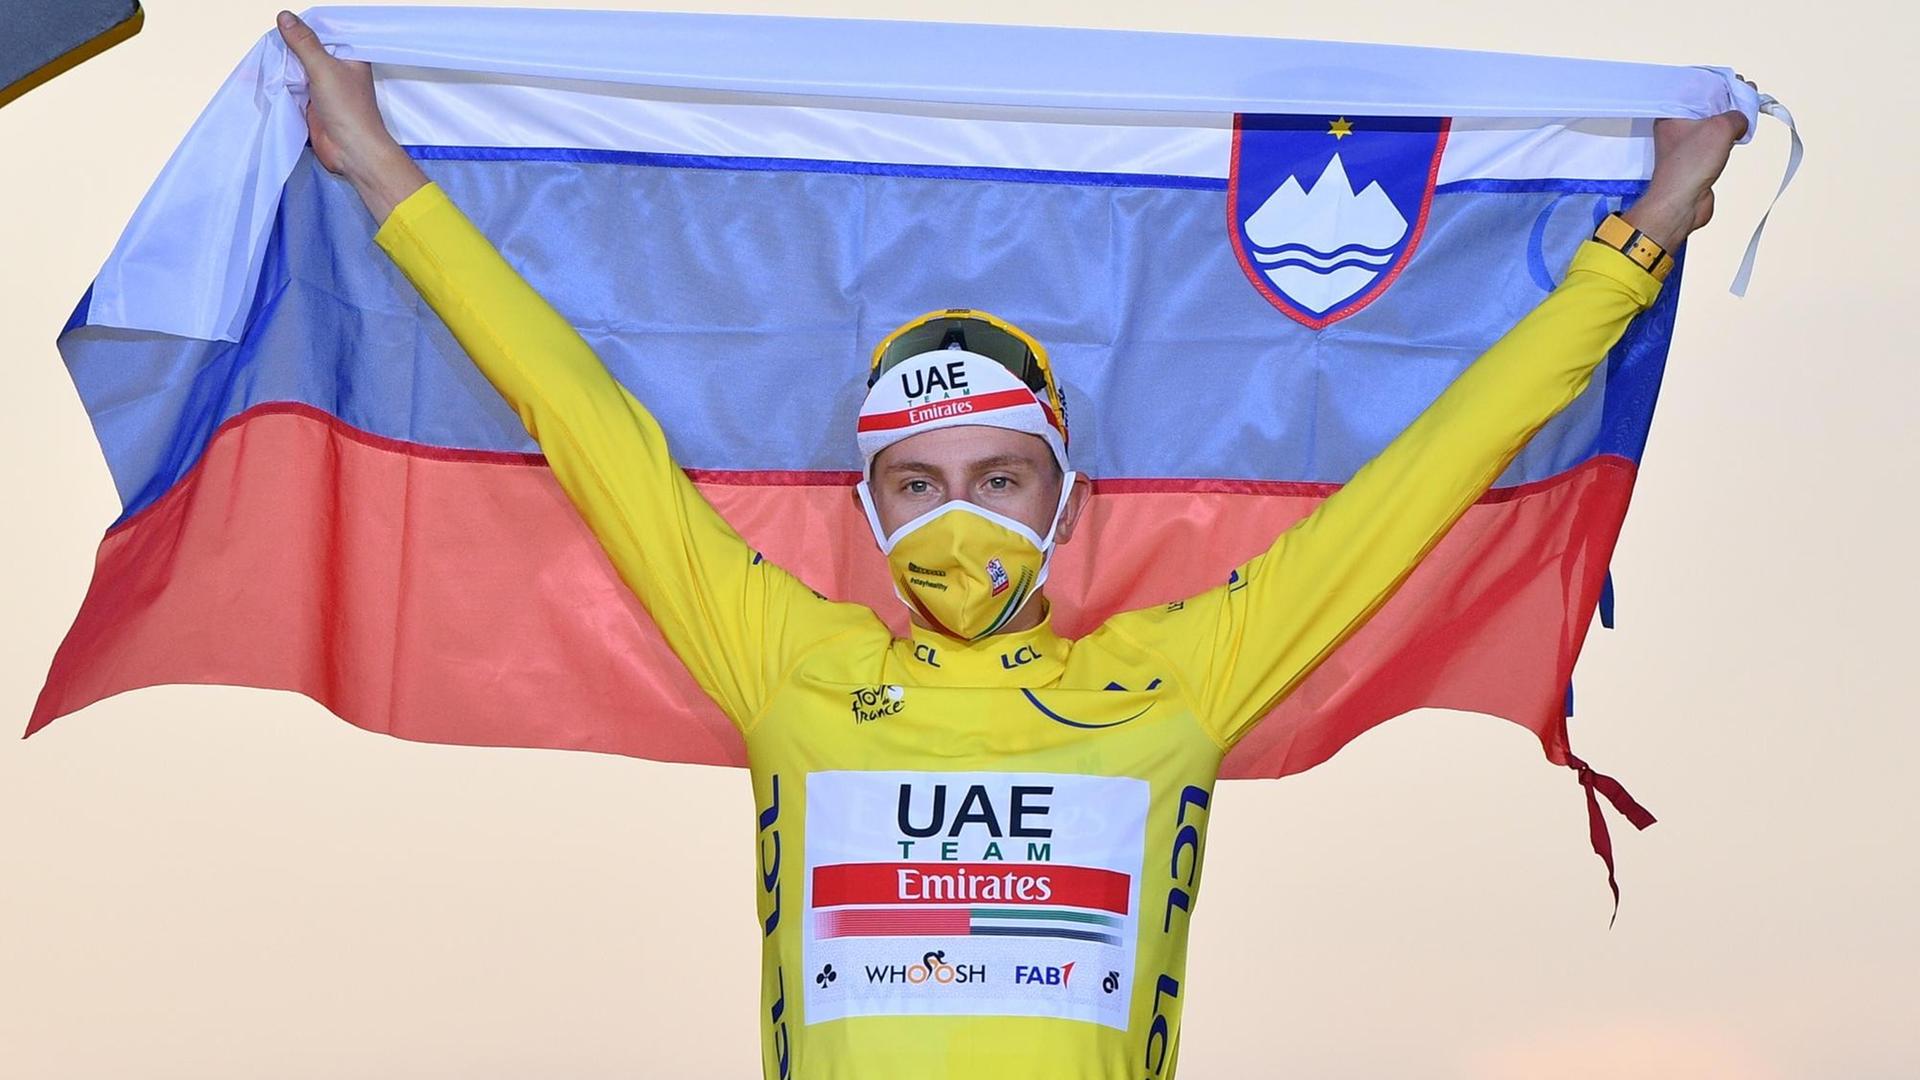 Der Renn-Fahrer Tadej Pogacar streckt im gelben Trikot die Arme nach oben und hält eine slowenische Flagge hoch.